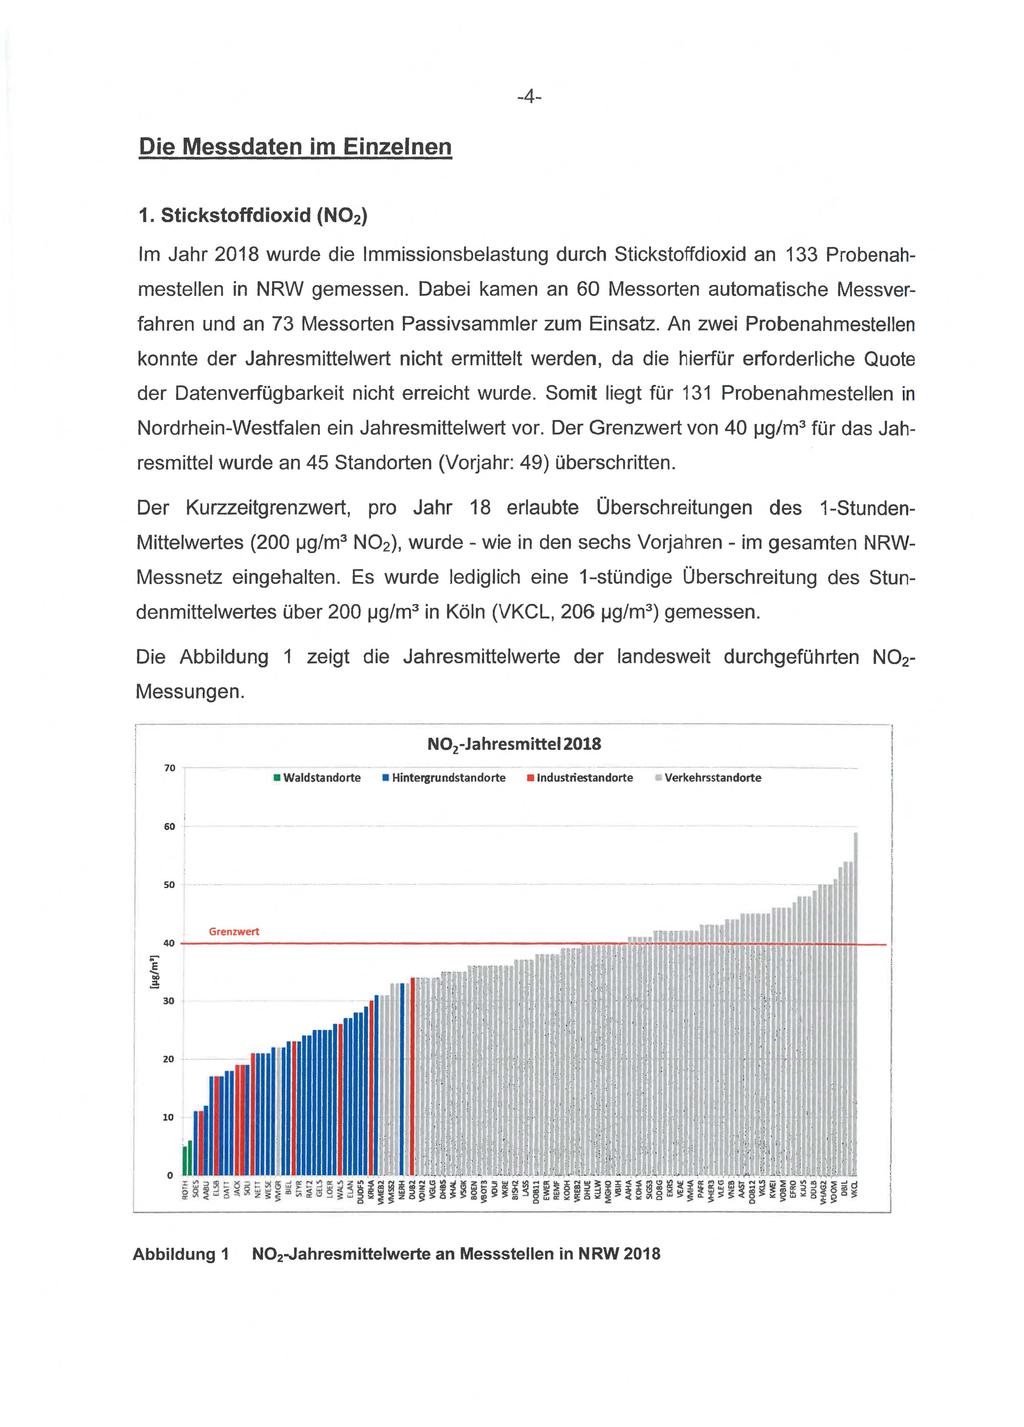 -4- Die Messdaten im Einzelnen 1. Stickstoffdioxid (N02) Im Jahr 2018 wurde die Immissionsbelastung durch Stickstoffdioxid an 133 ProbenahmesteIlen in NRW gemessen.